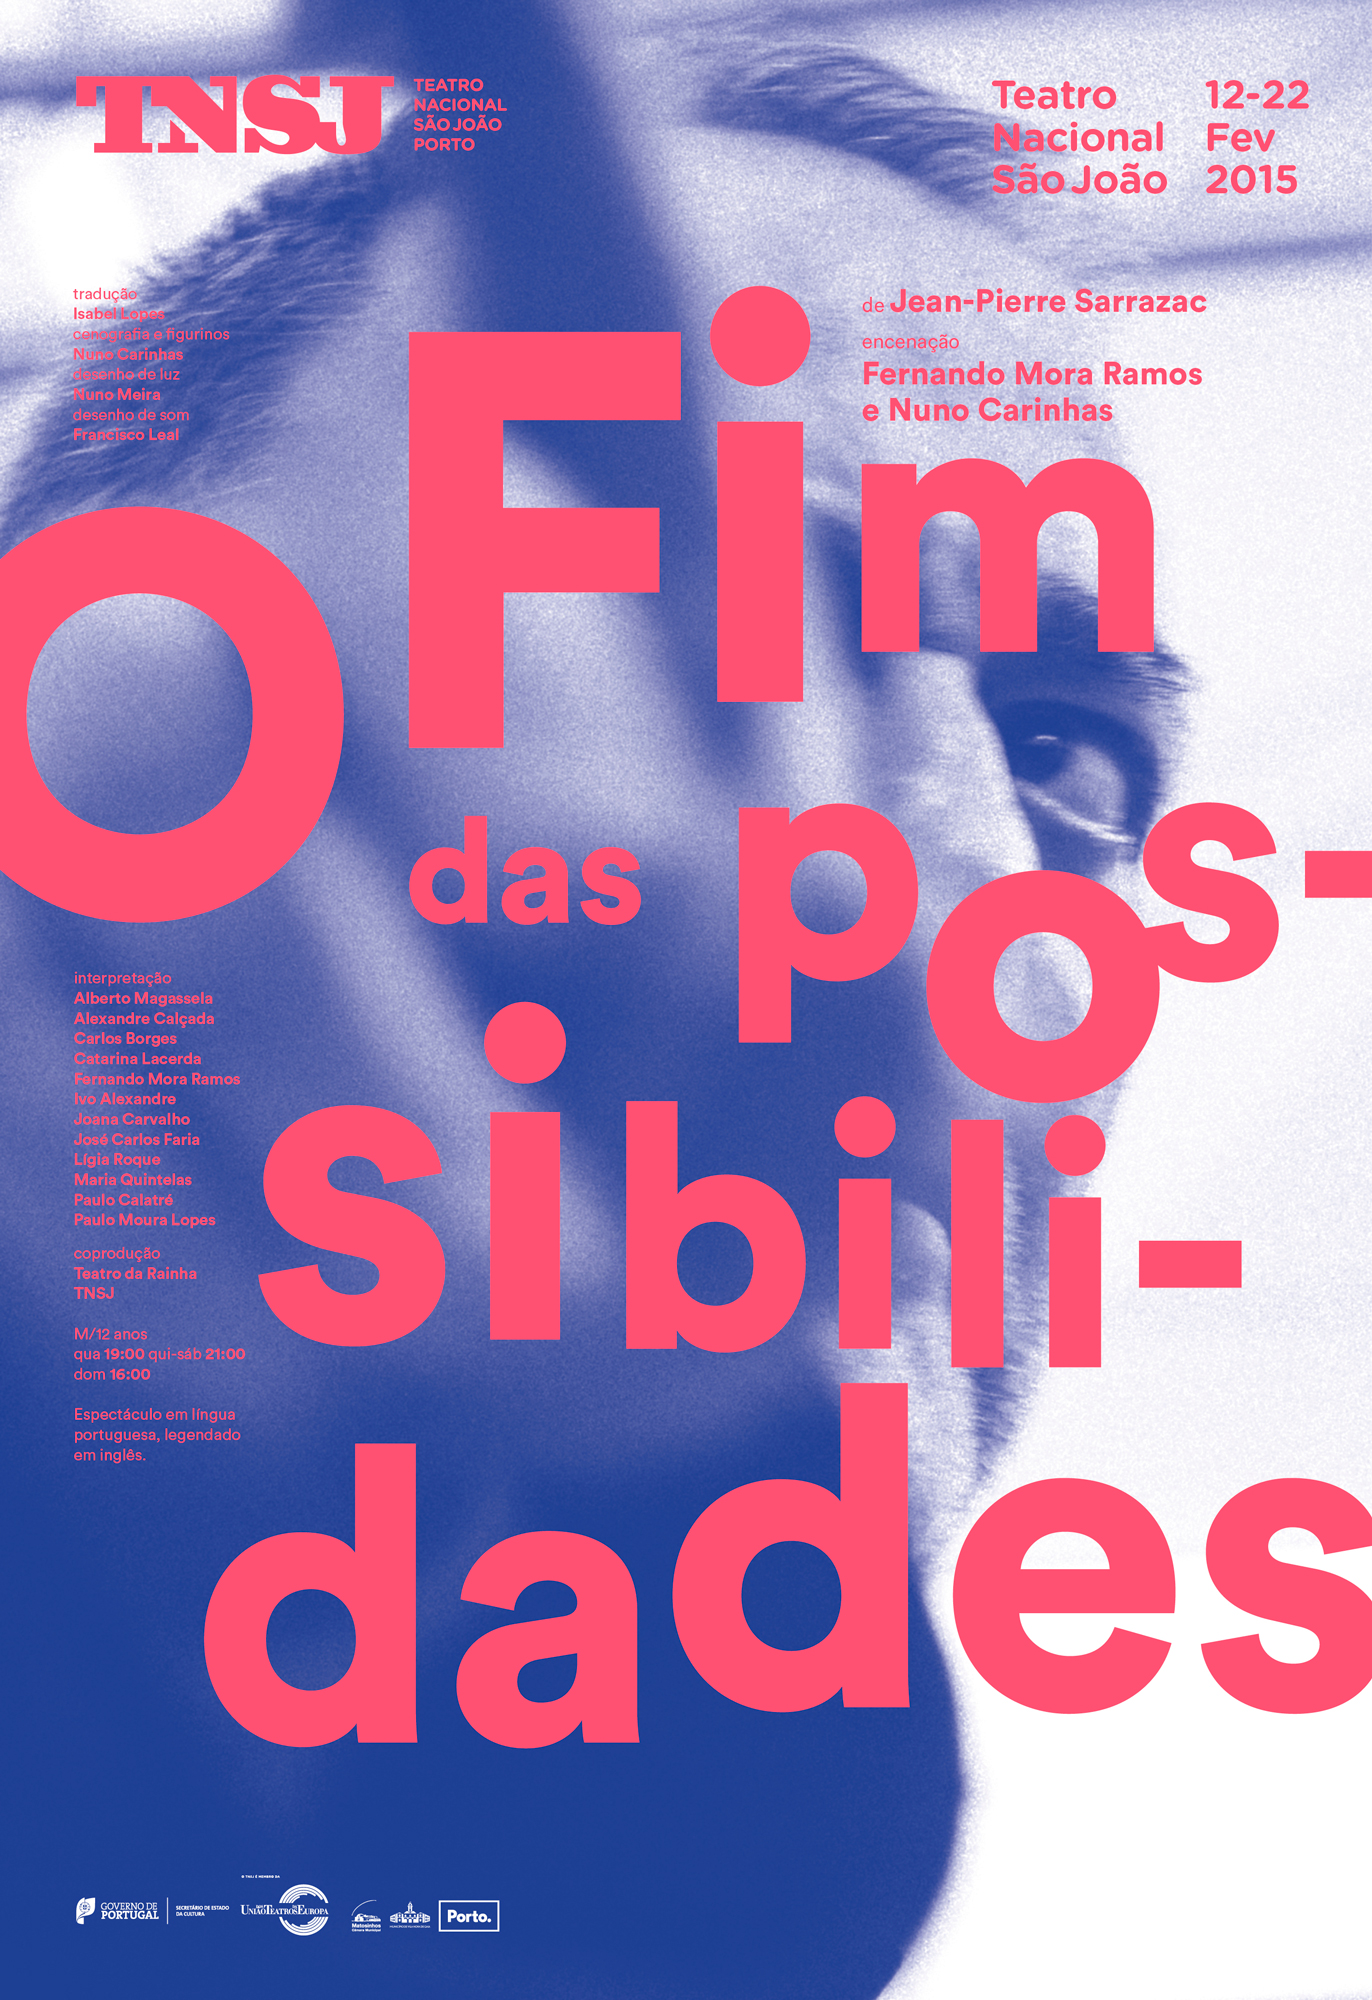 São João National Theatre Posters 2017-2018 Image:10.8